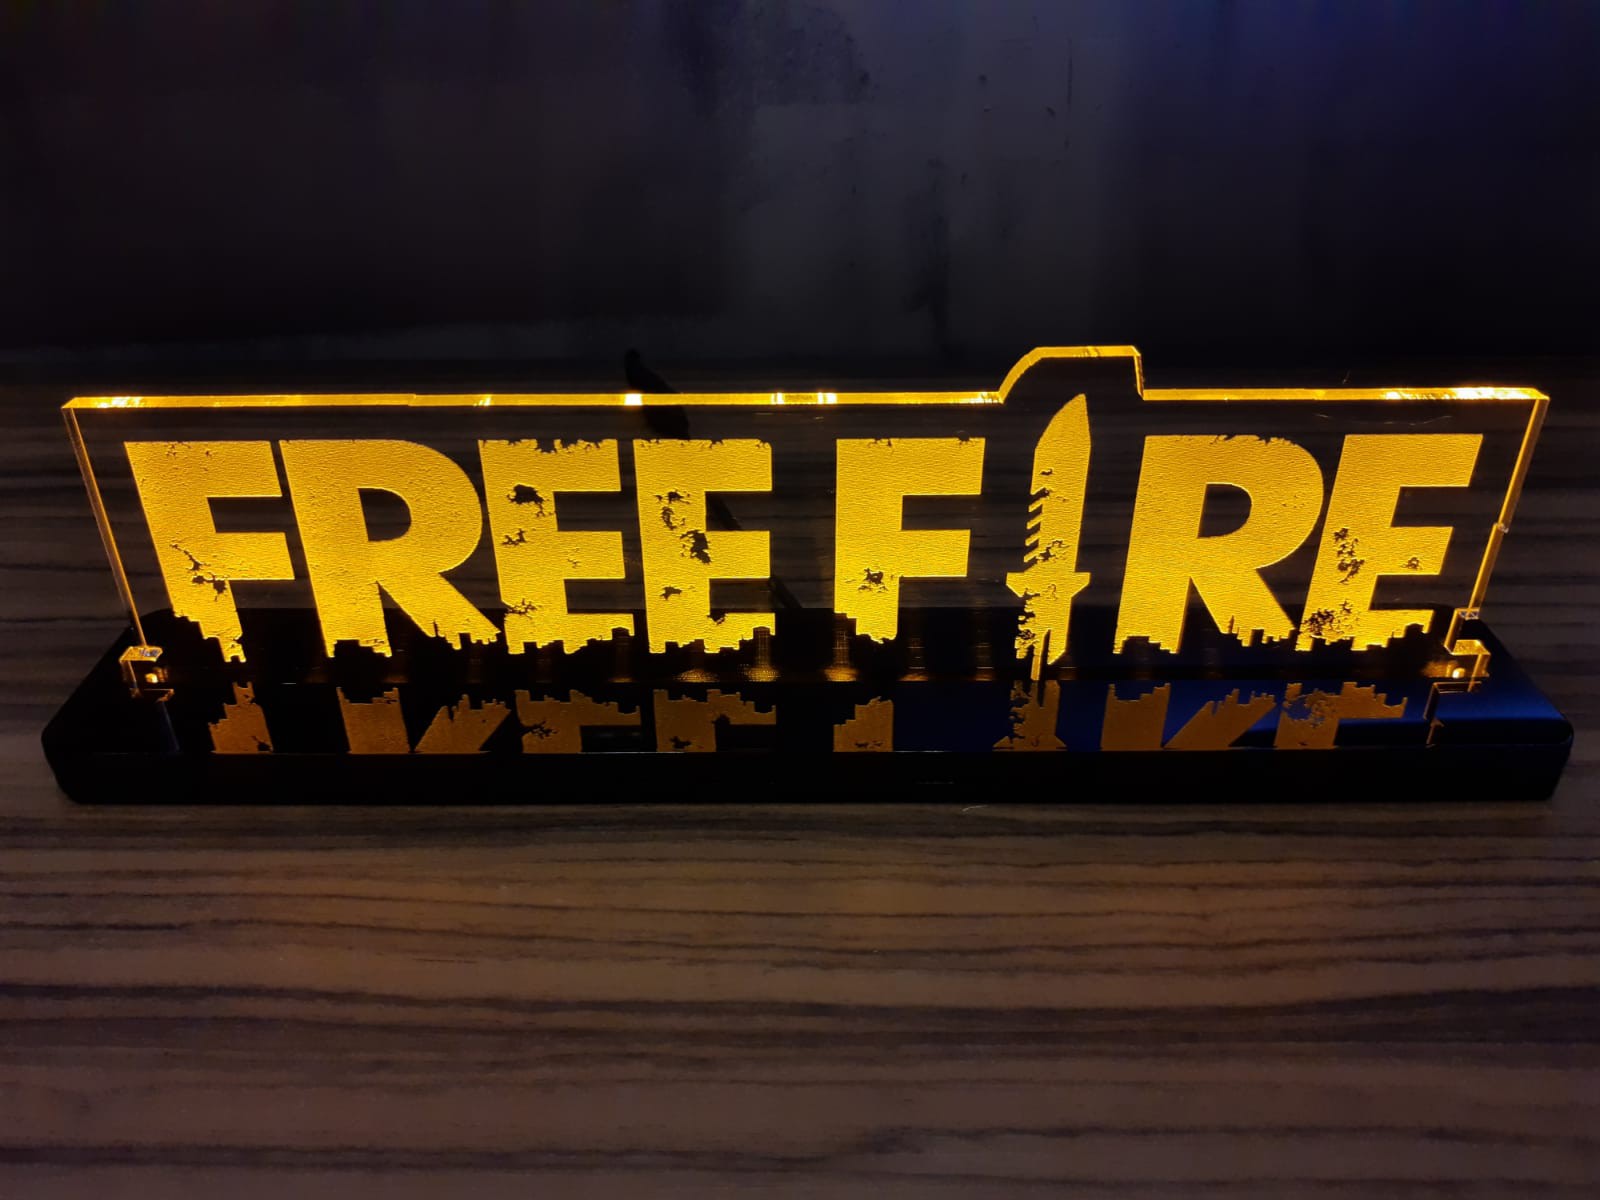 Luminária Free Fire Freefire LED única Com Nome Personalizado